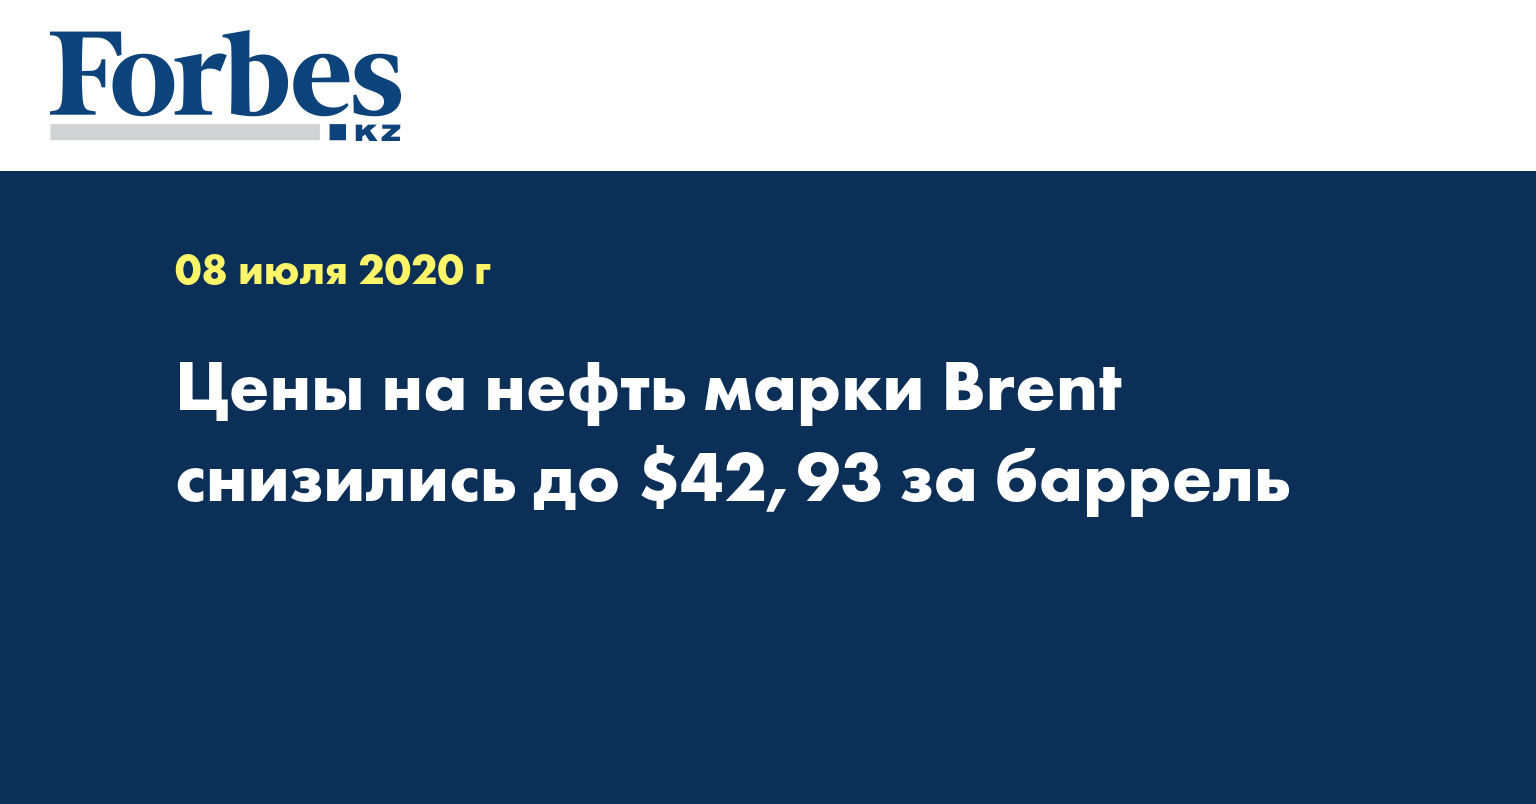 Цены на нефть марки Brent снизились до $42,93 за баррель